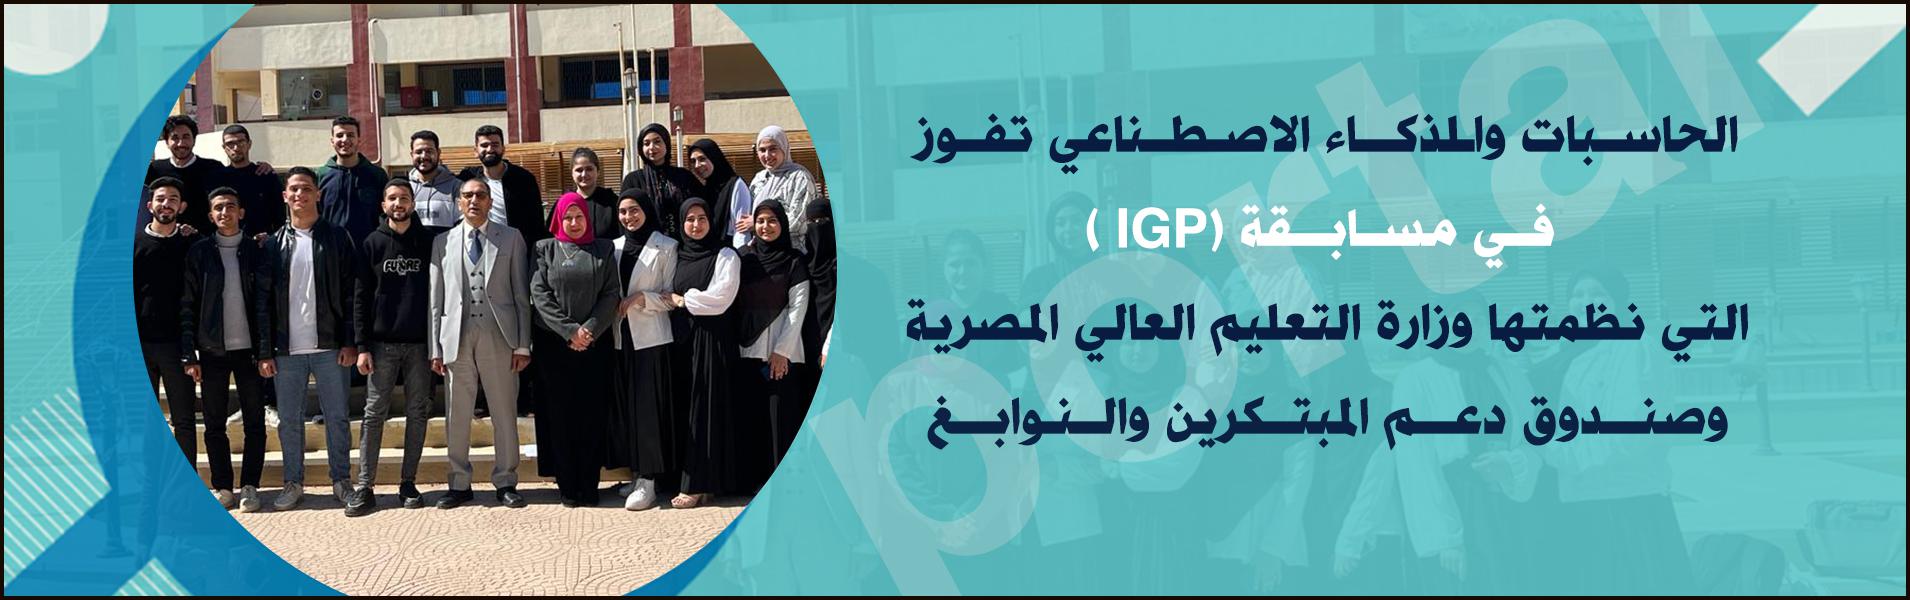 الحاسبات والذكاء الاصطناعي تفوز  في مسابقة (IGP ) التي نظمتها وزارة التعليم العالي المصرية وصندوق دعم المبتكرين والنوابغ